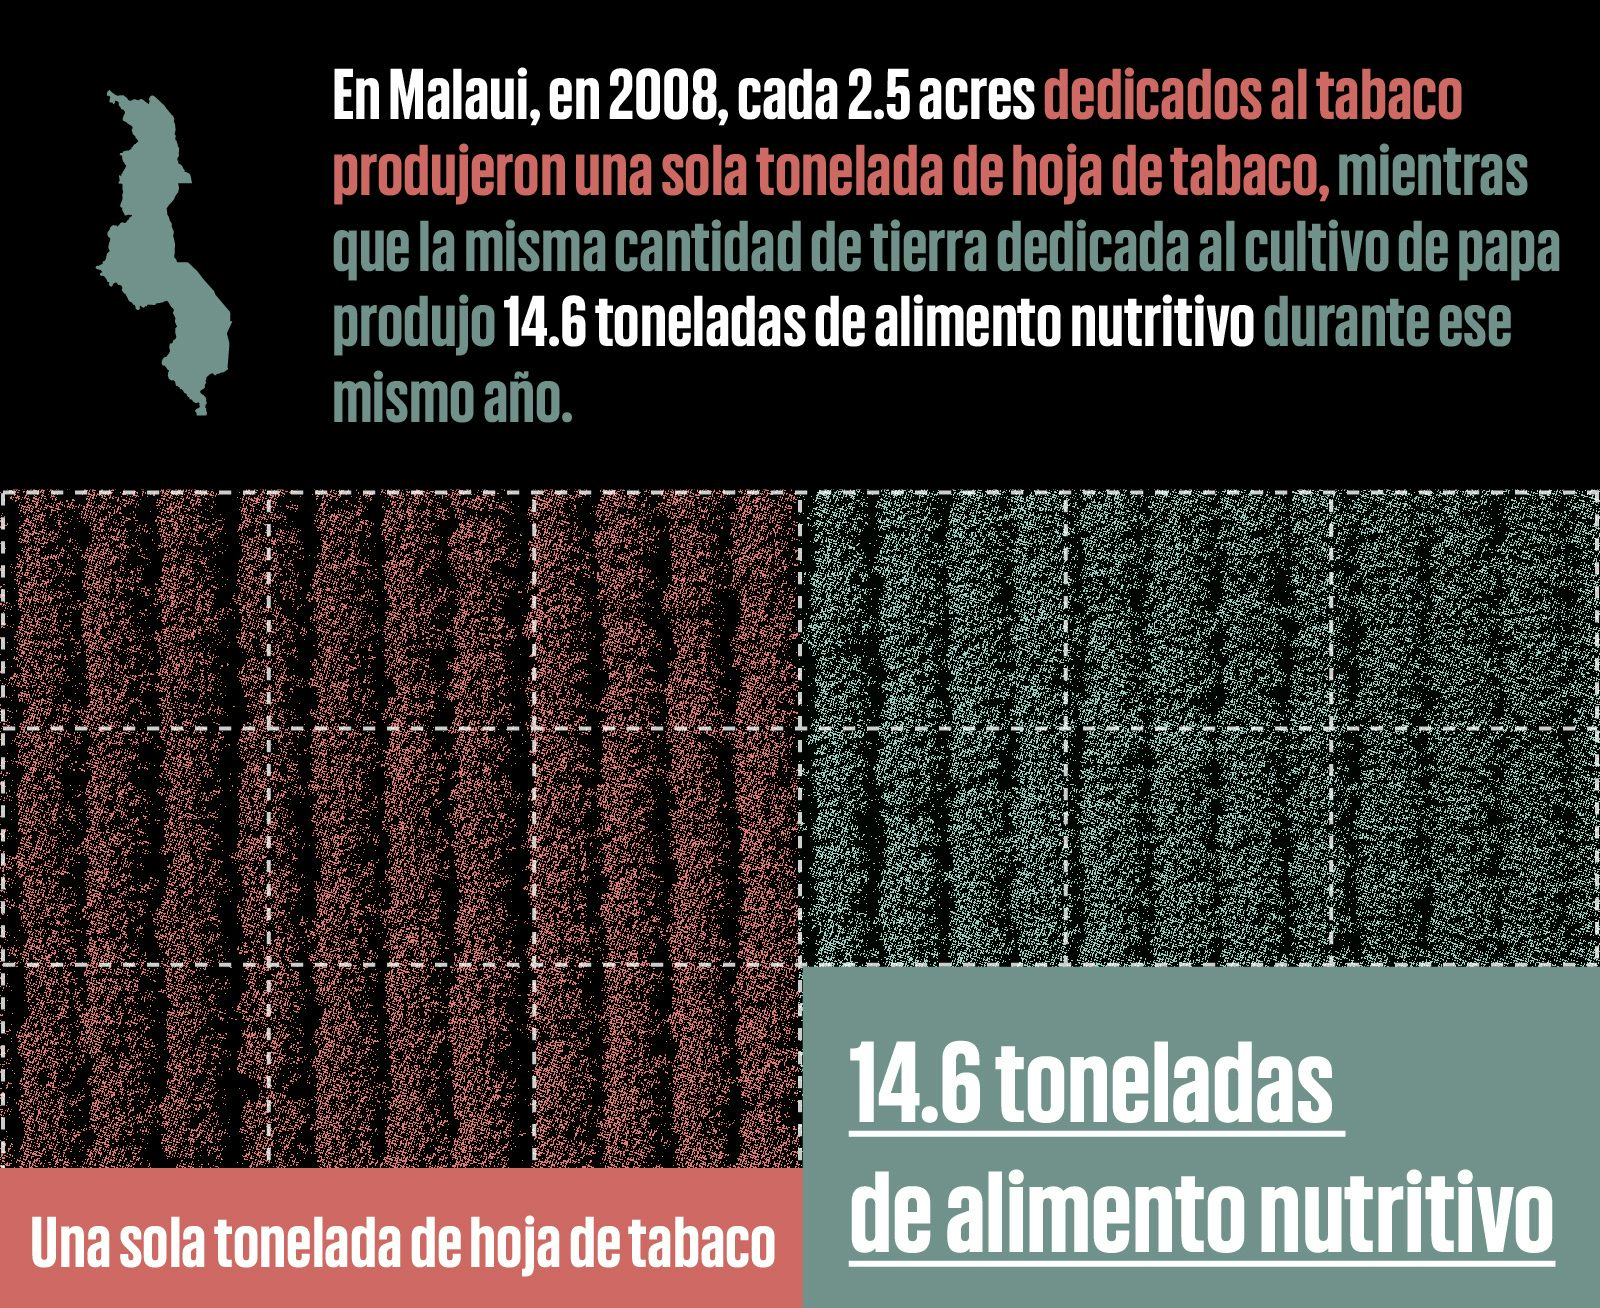 Infografía comparando el uso de terreno para el cultivo del tabaco a el cultivo de papa